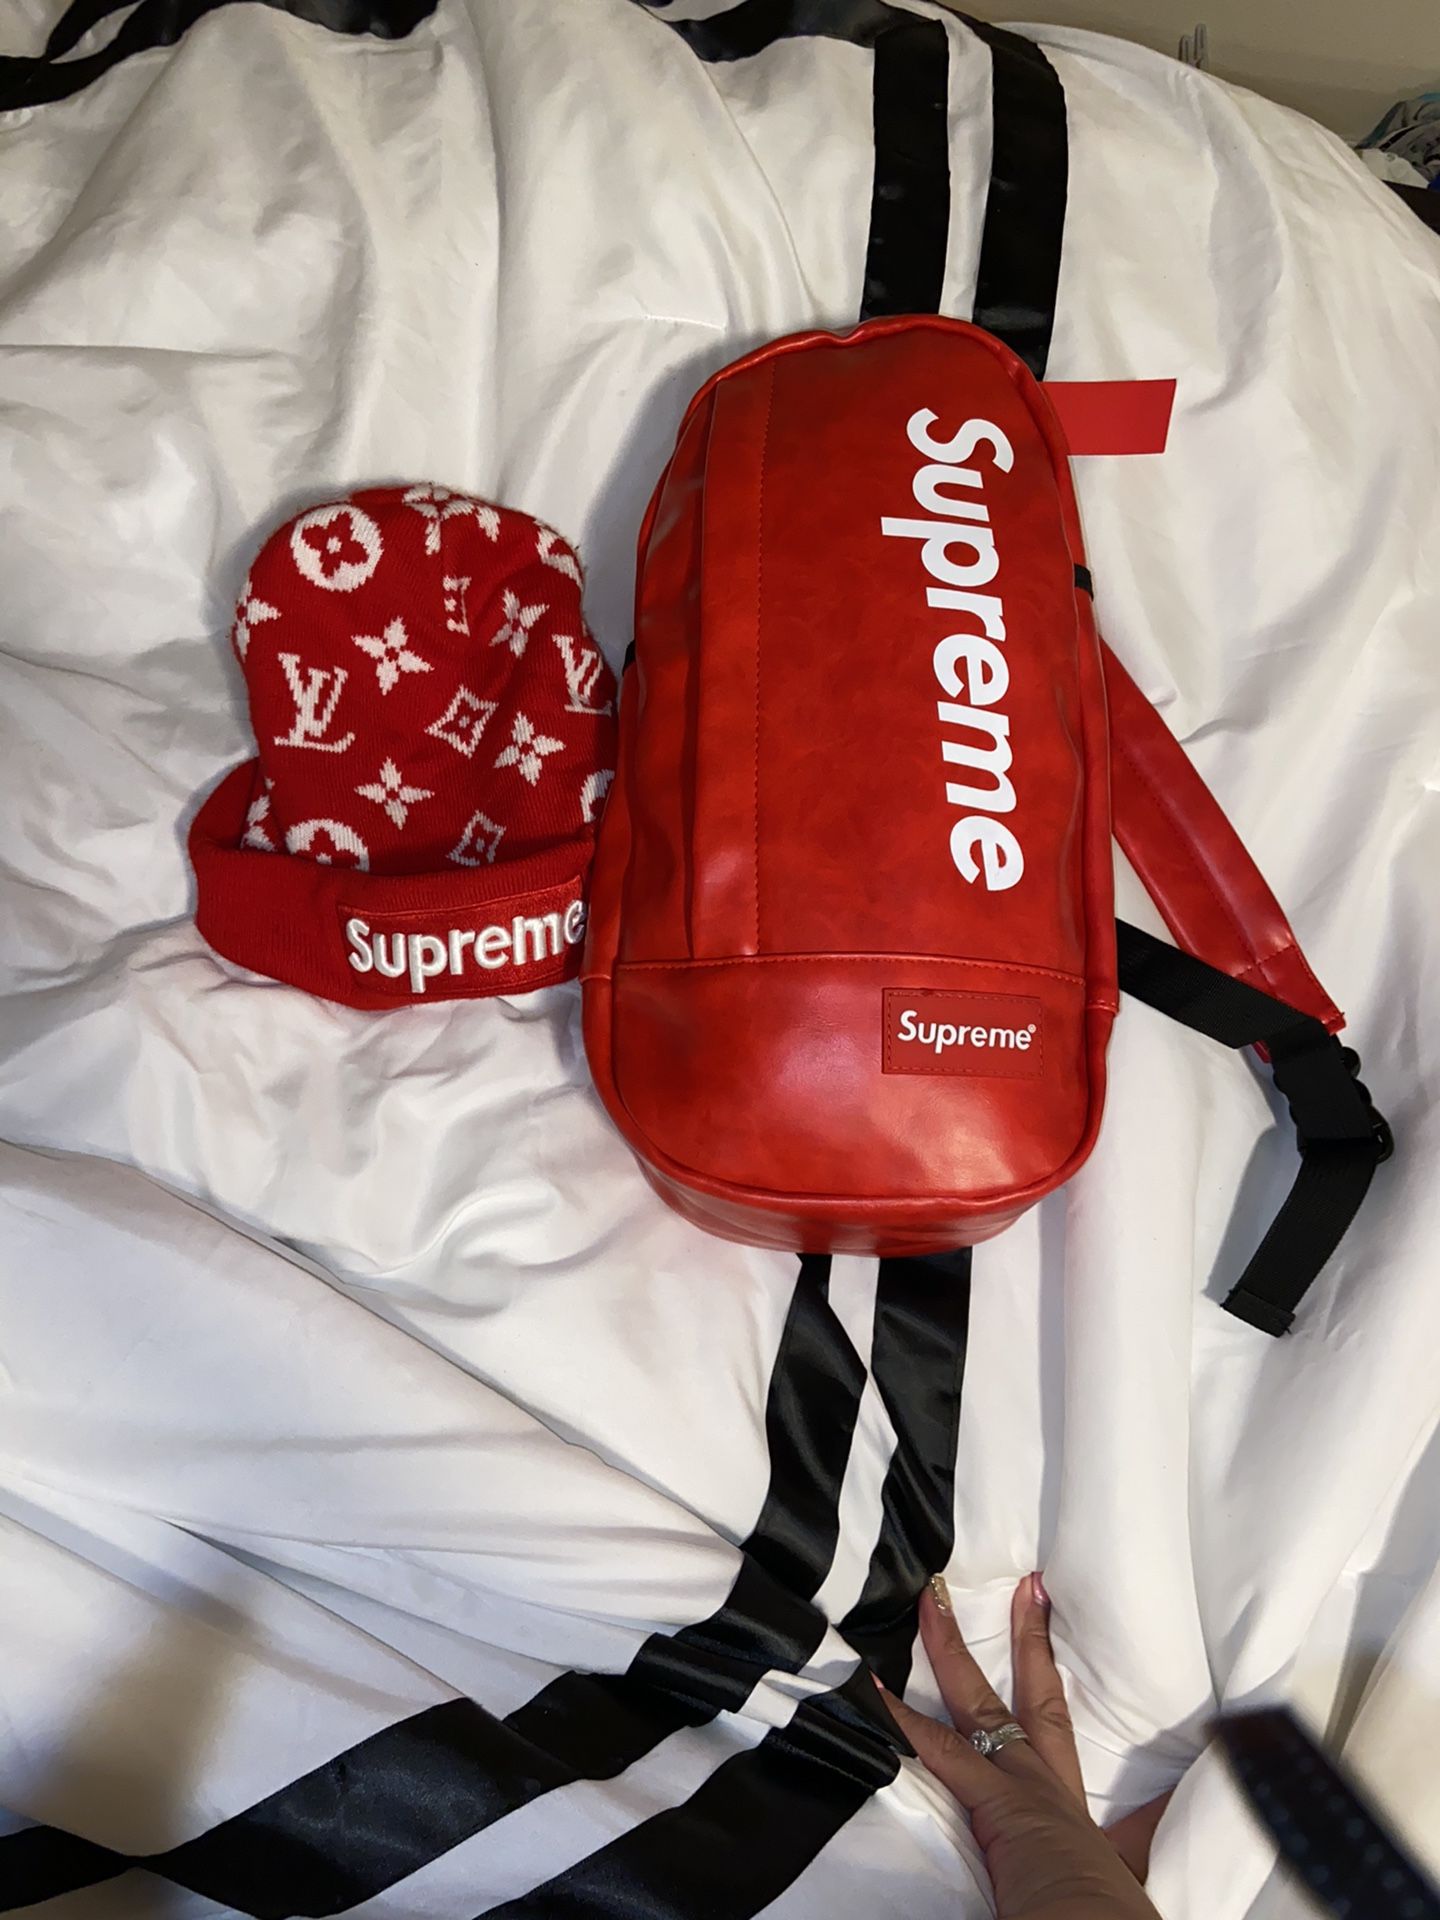 Supreme backpack and beanie